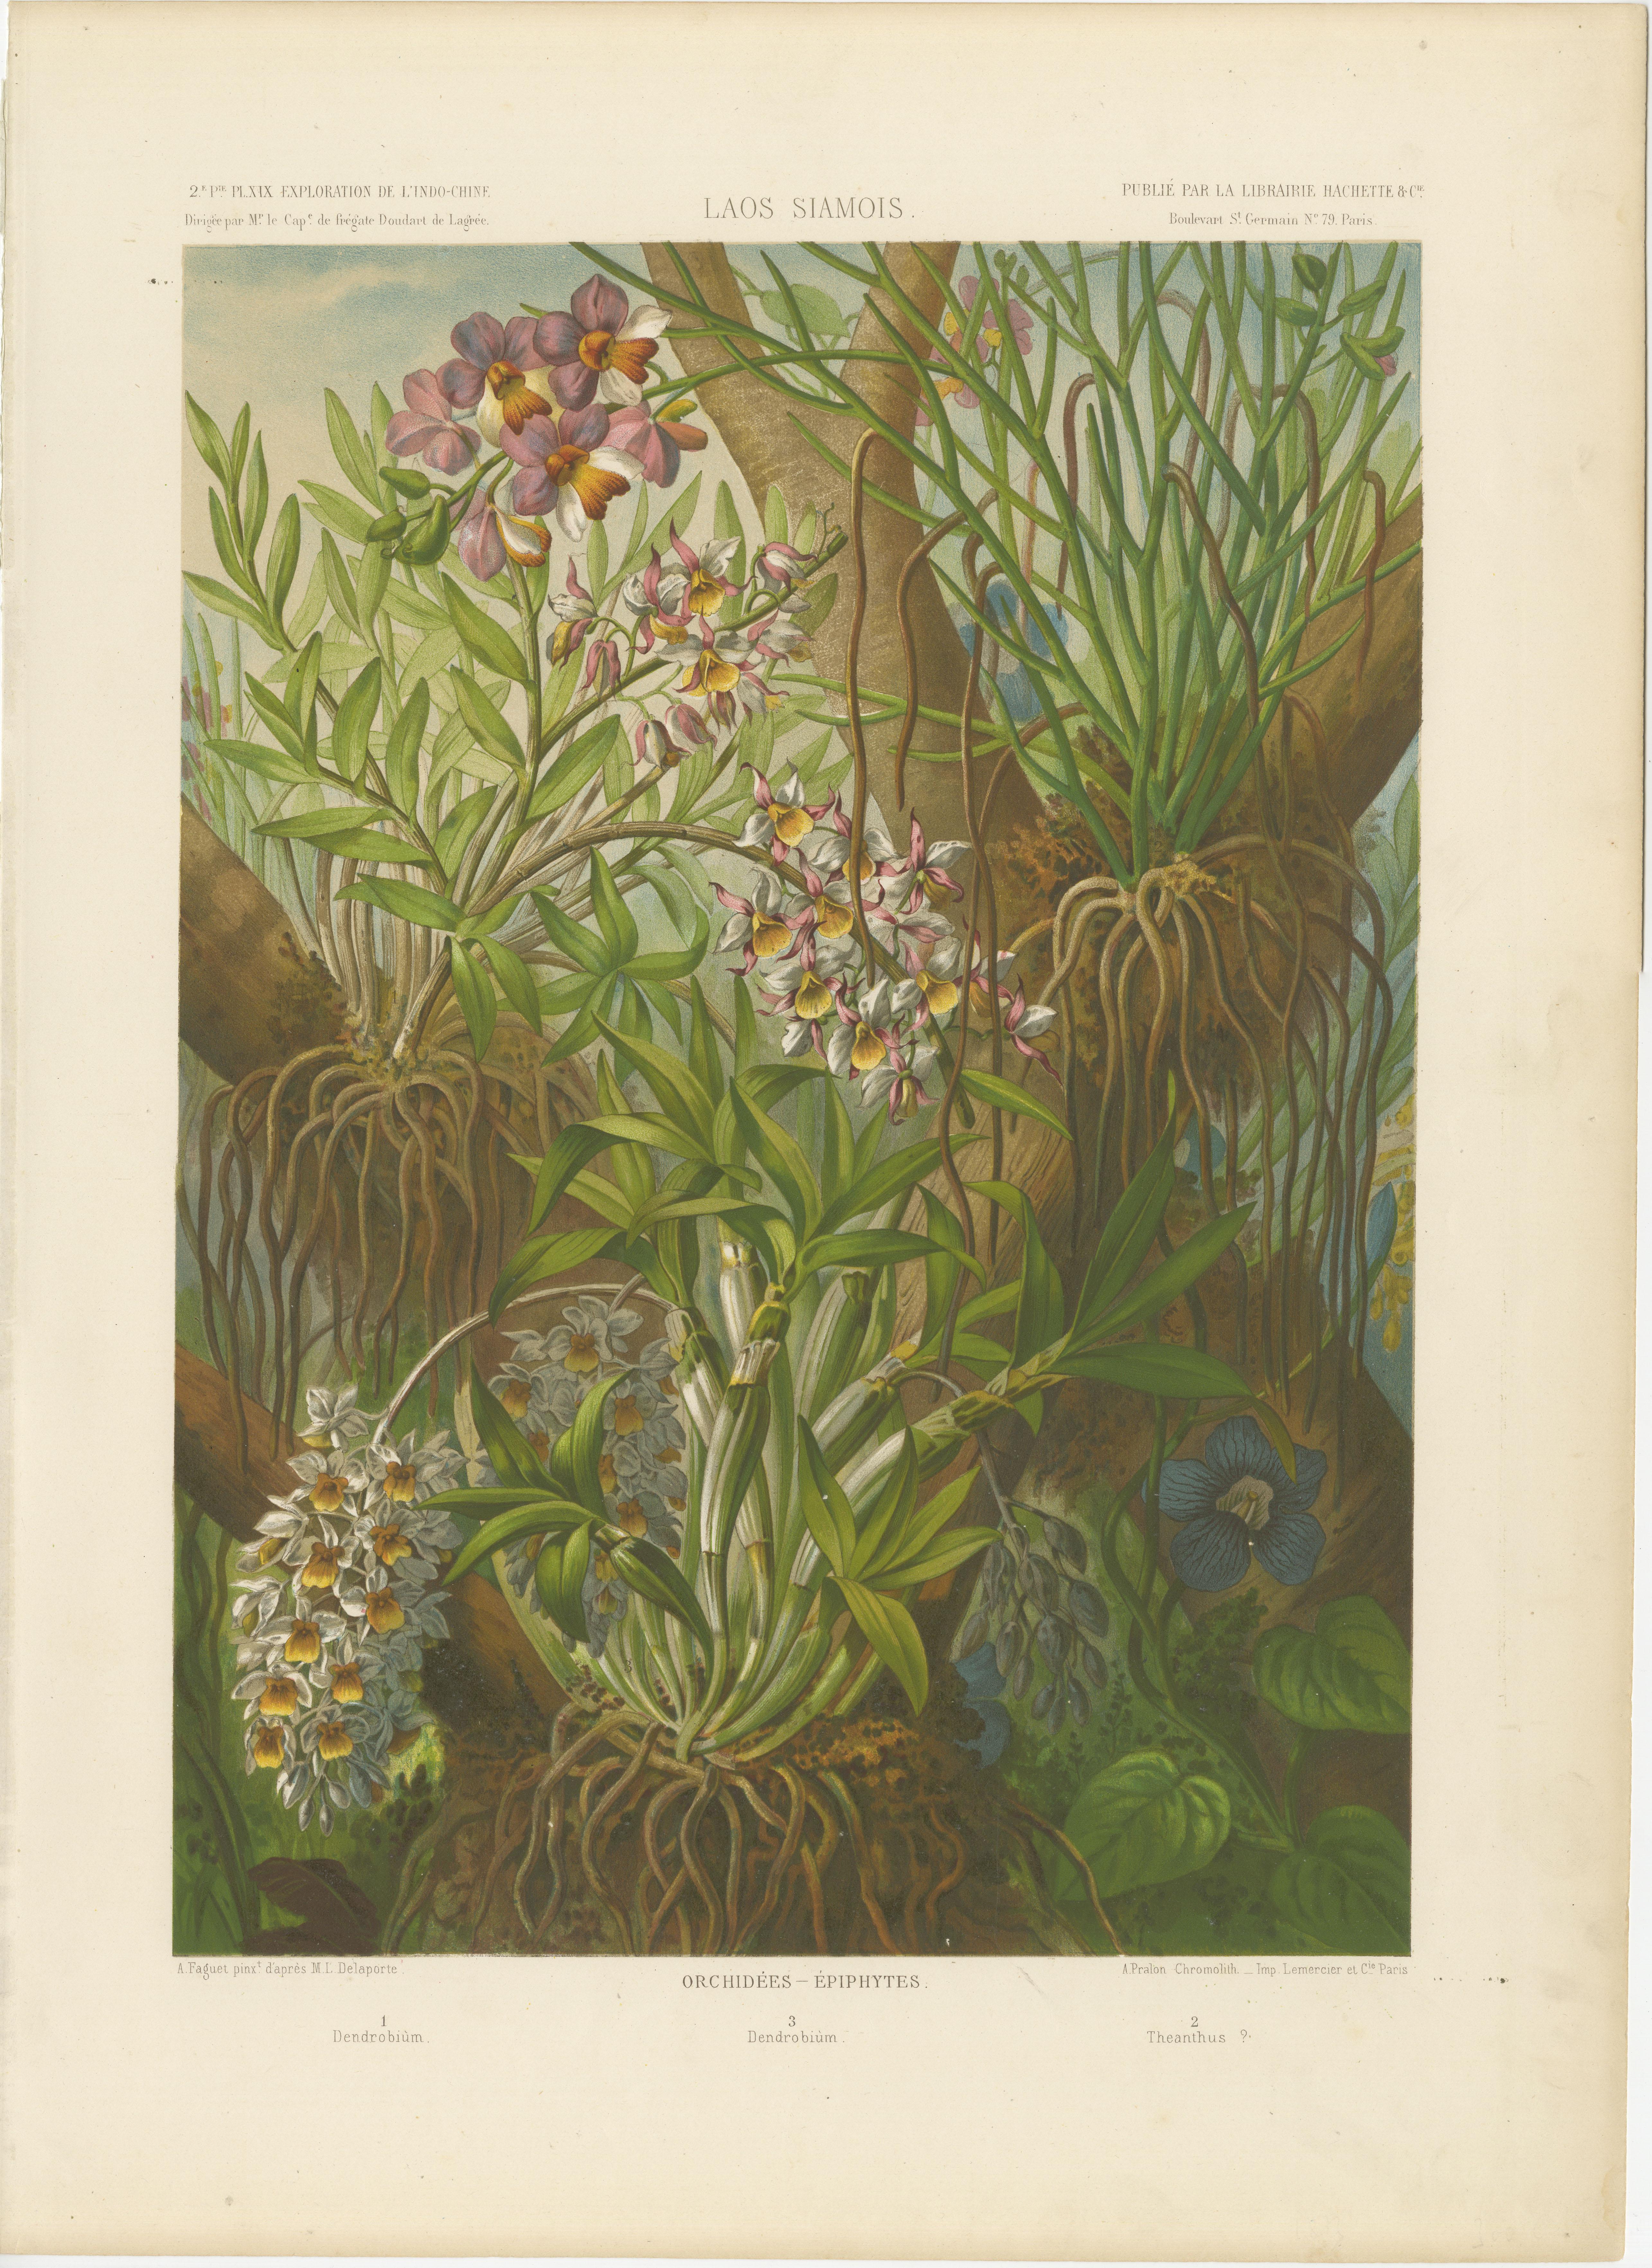 Antique print titled 'Laos Siamois - Orchidées - Épiphytes'. Large print showing orchids and epiphytes in Laos. This print originates from 'Voyage d'exploration en Indo-Chine effectué pendant les années 1866, 1867 et 1868 par une Commission